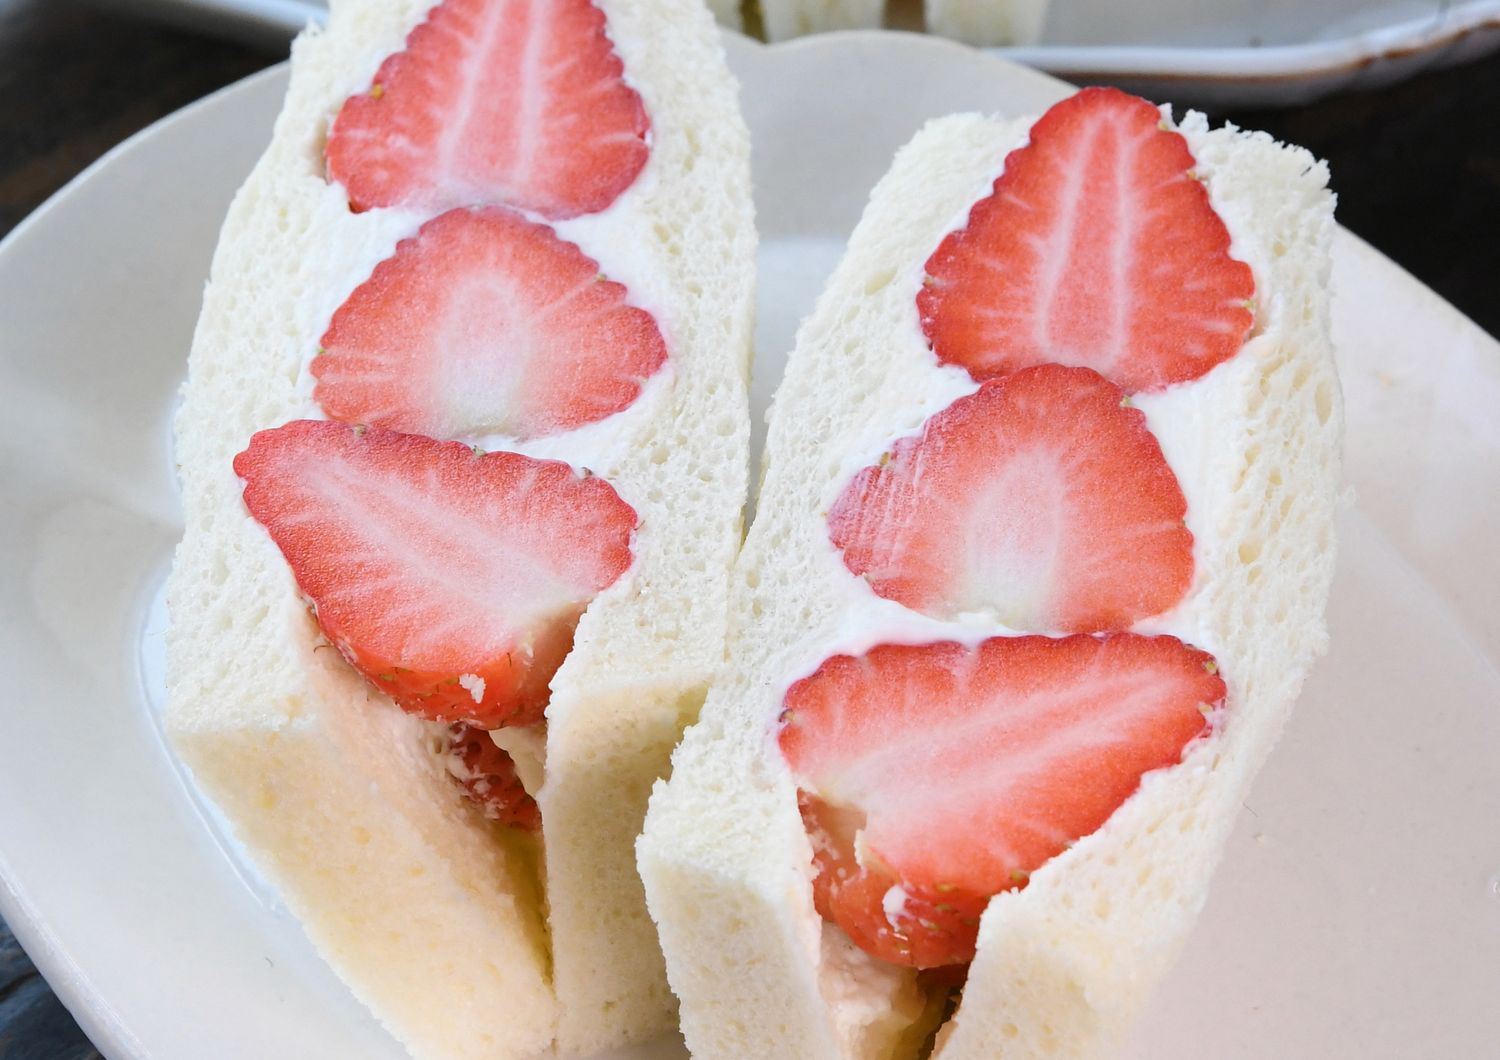 Sandwich alla frutta, delizia giapponese